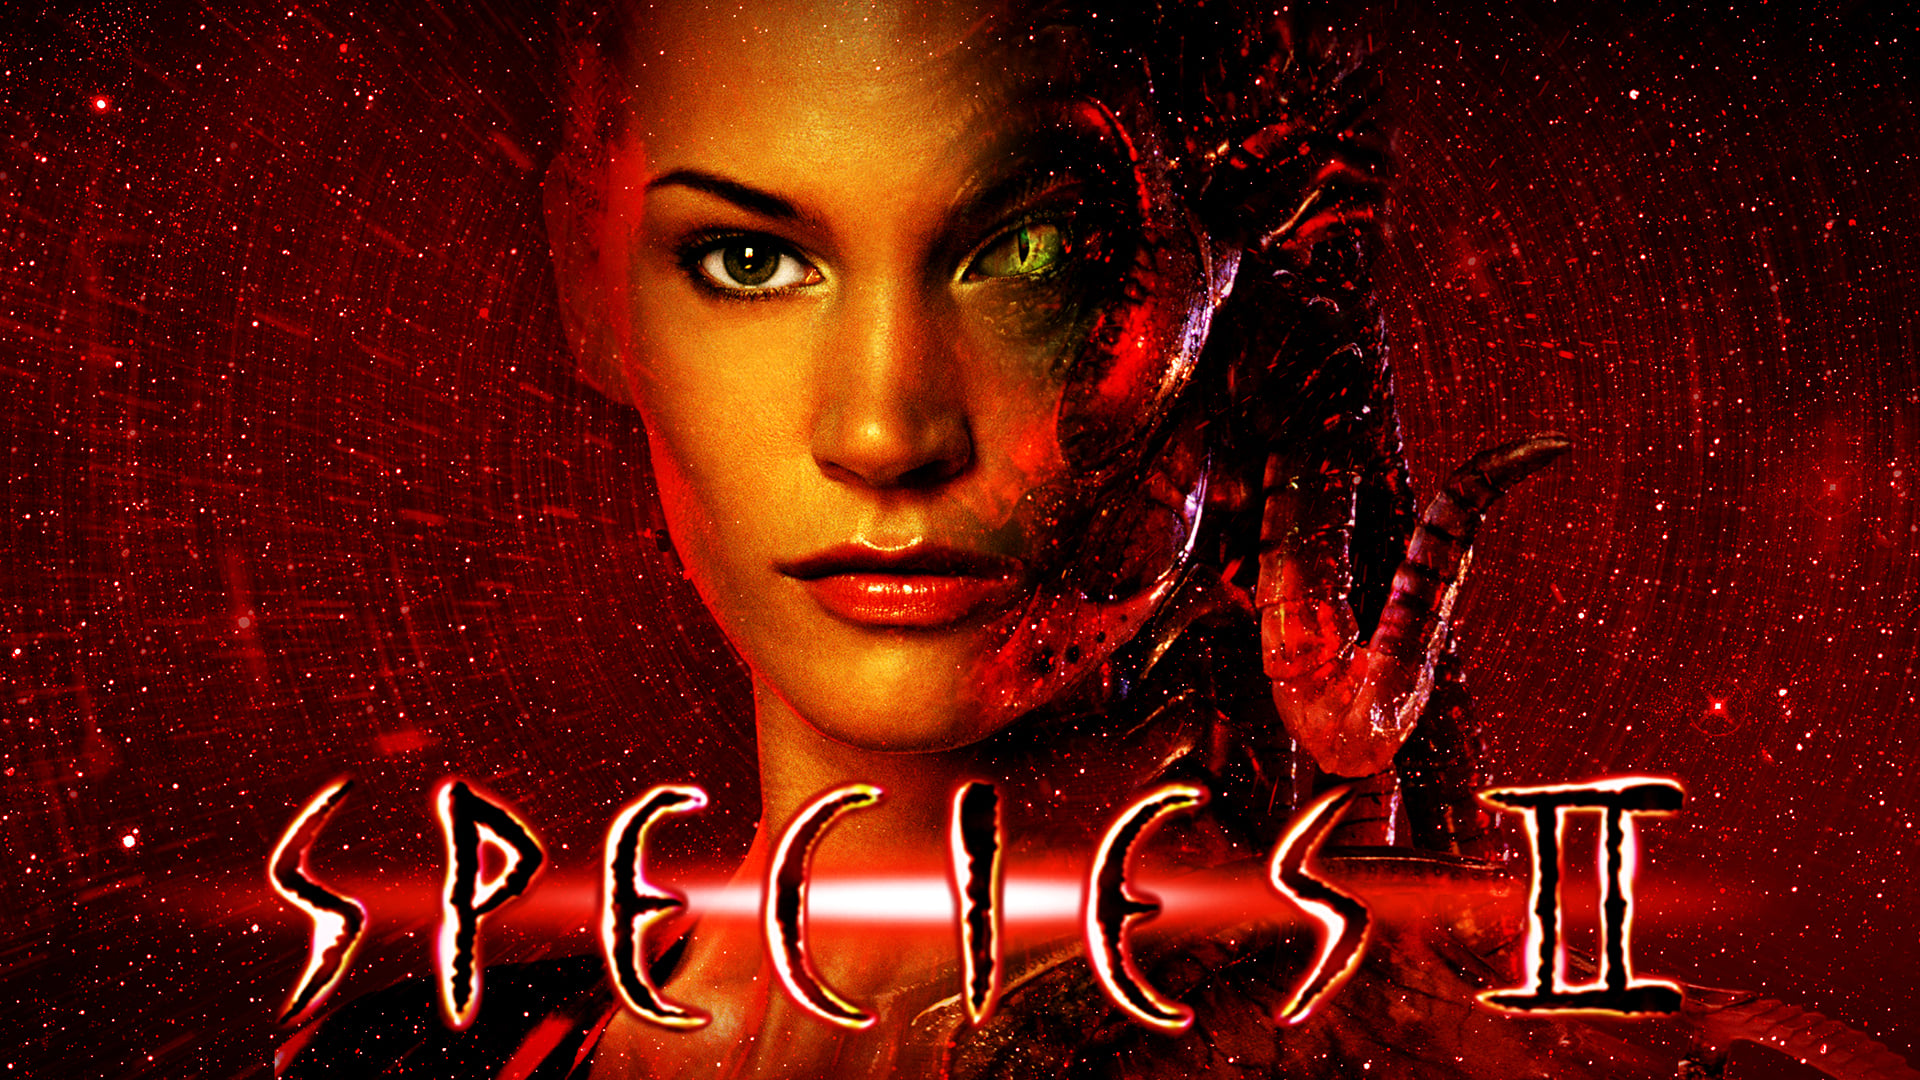 Species II (1998)